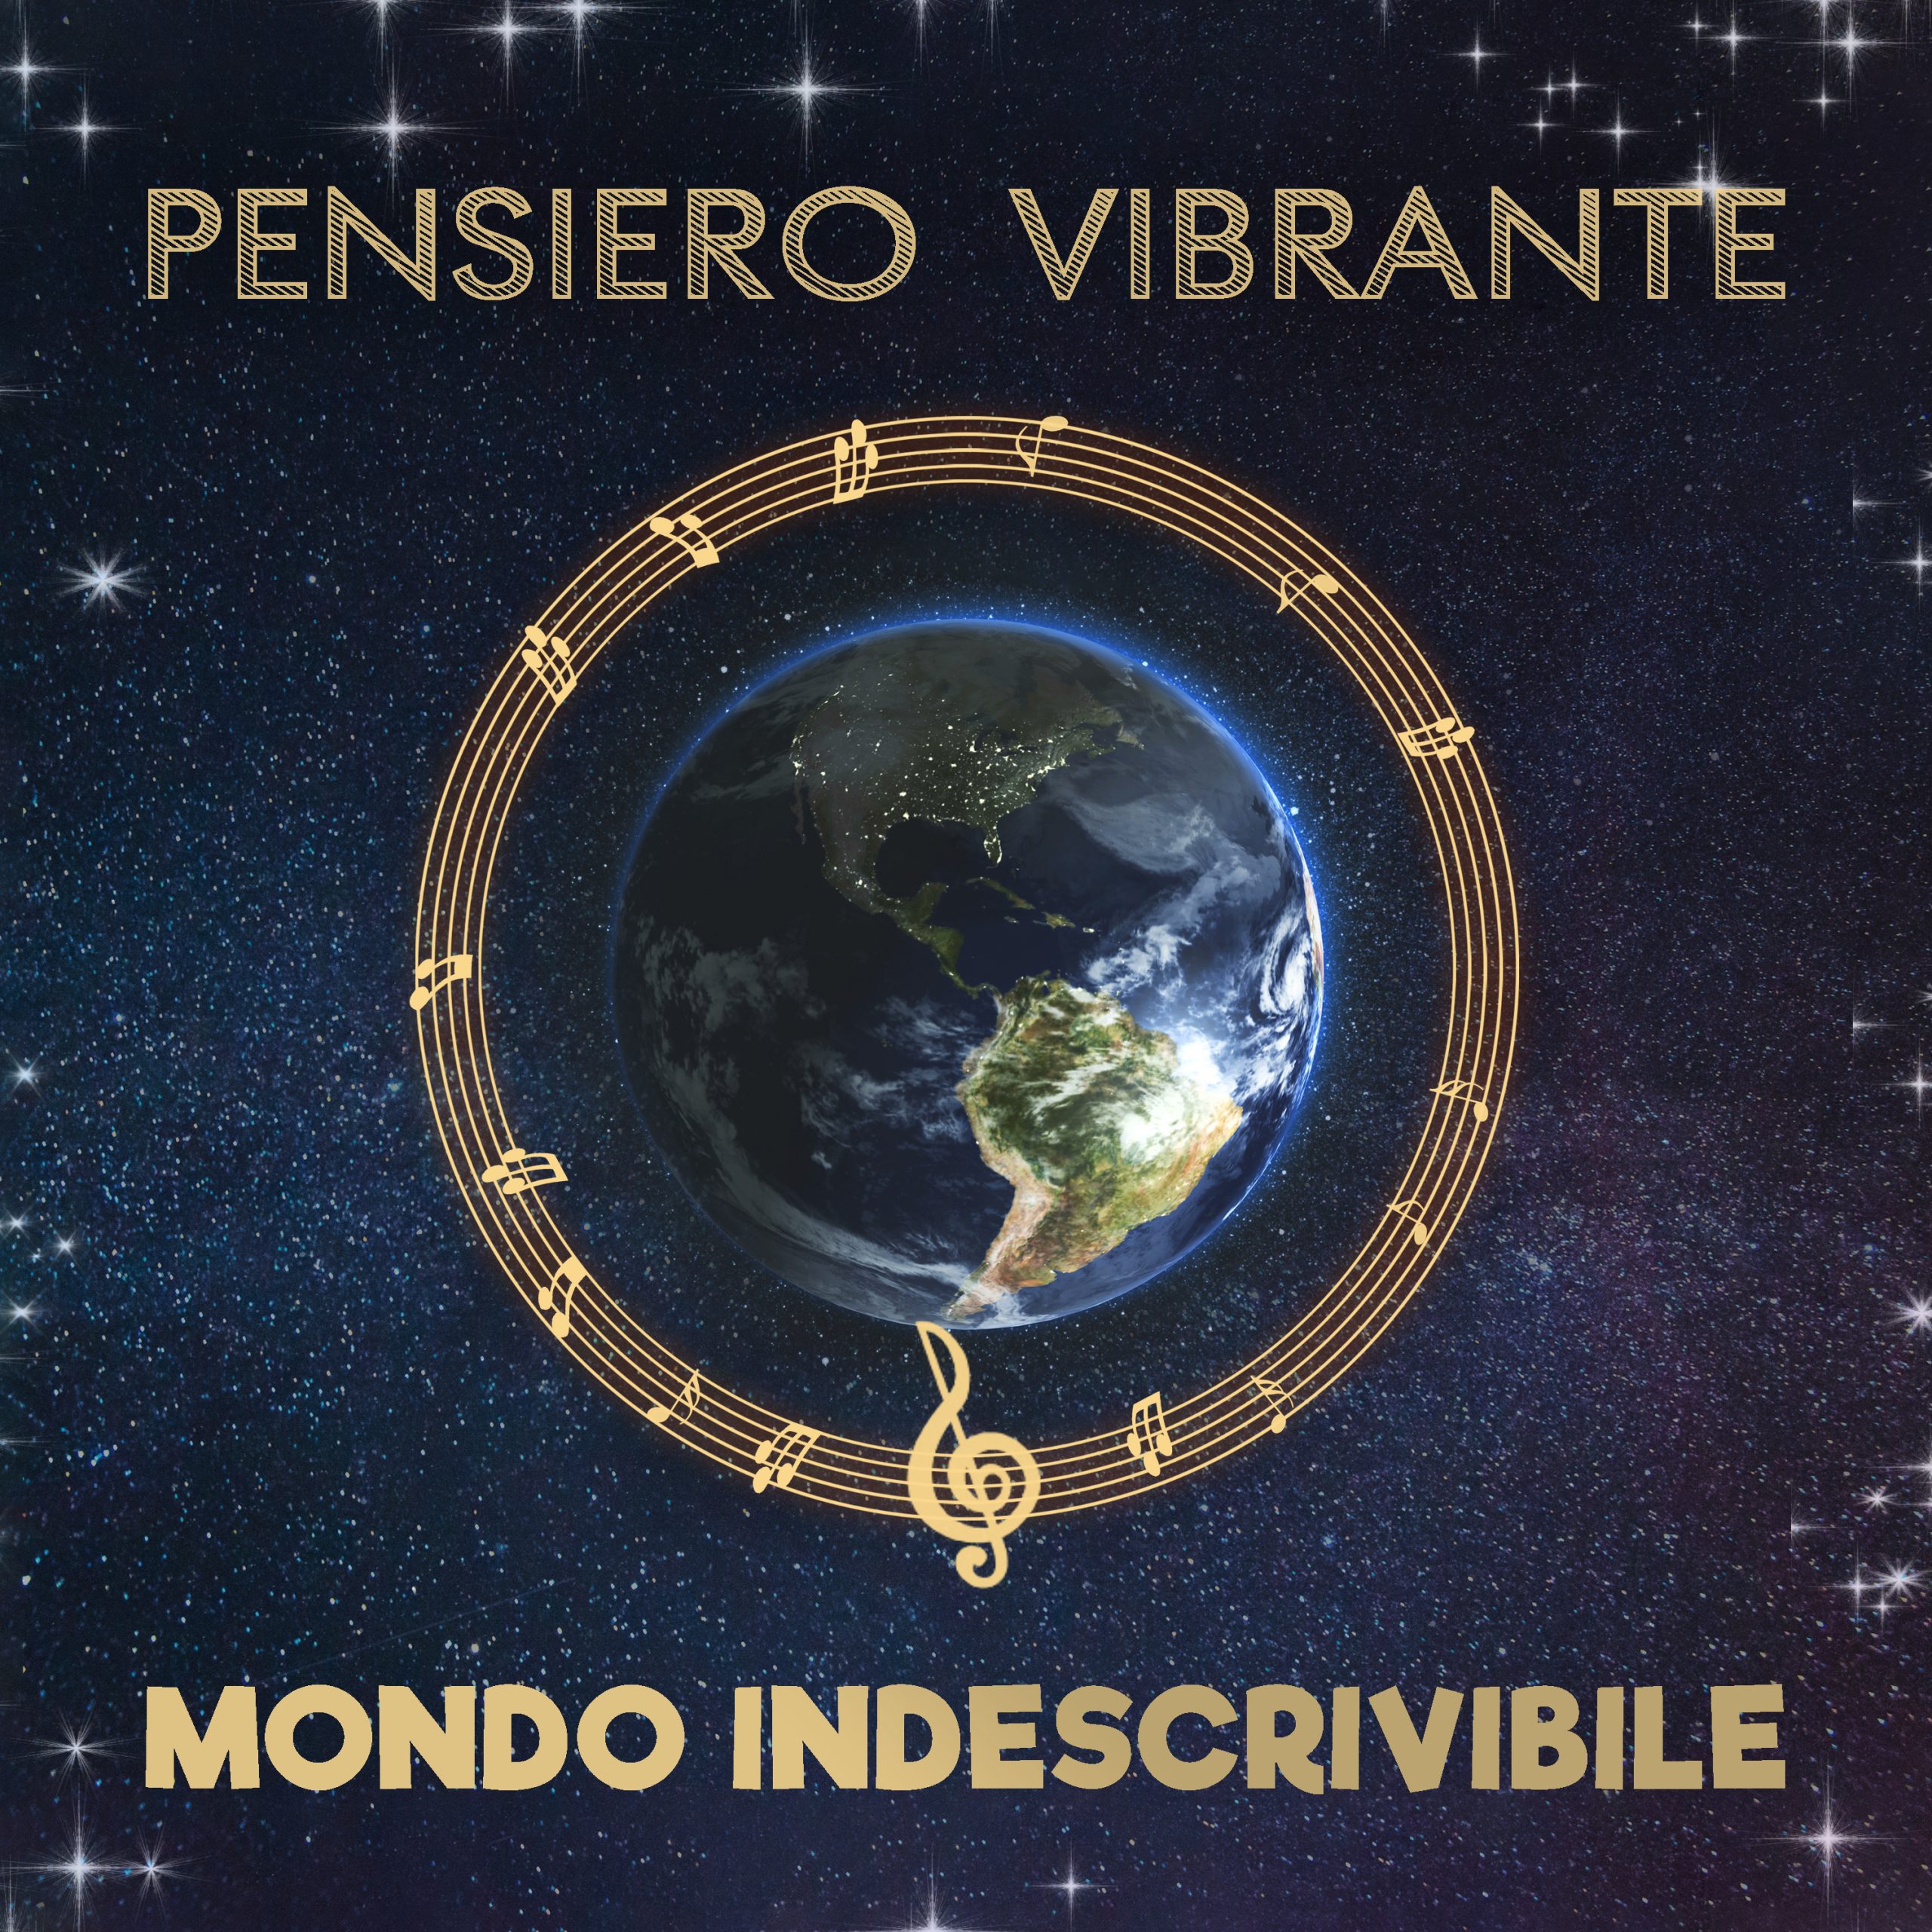 Pensiero-Vibrante-Mondo-indescribile-COVER-scaled-1.jpg